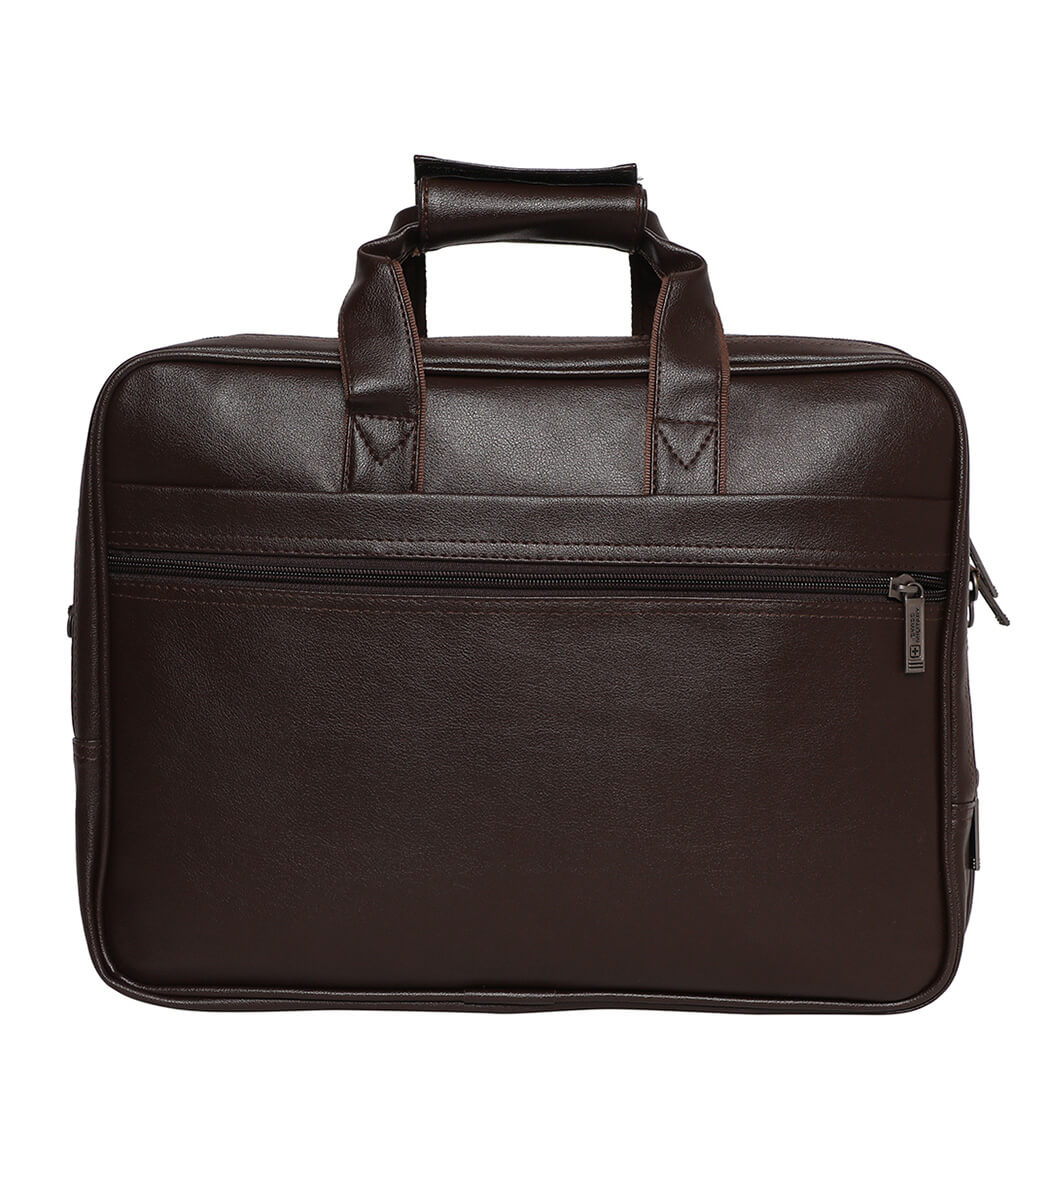 Buy Brown Laptop Sling Bags Online